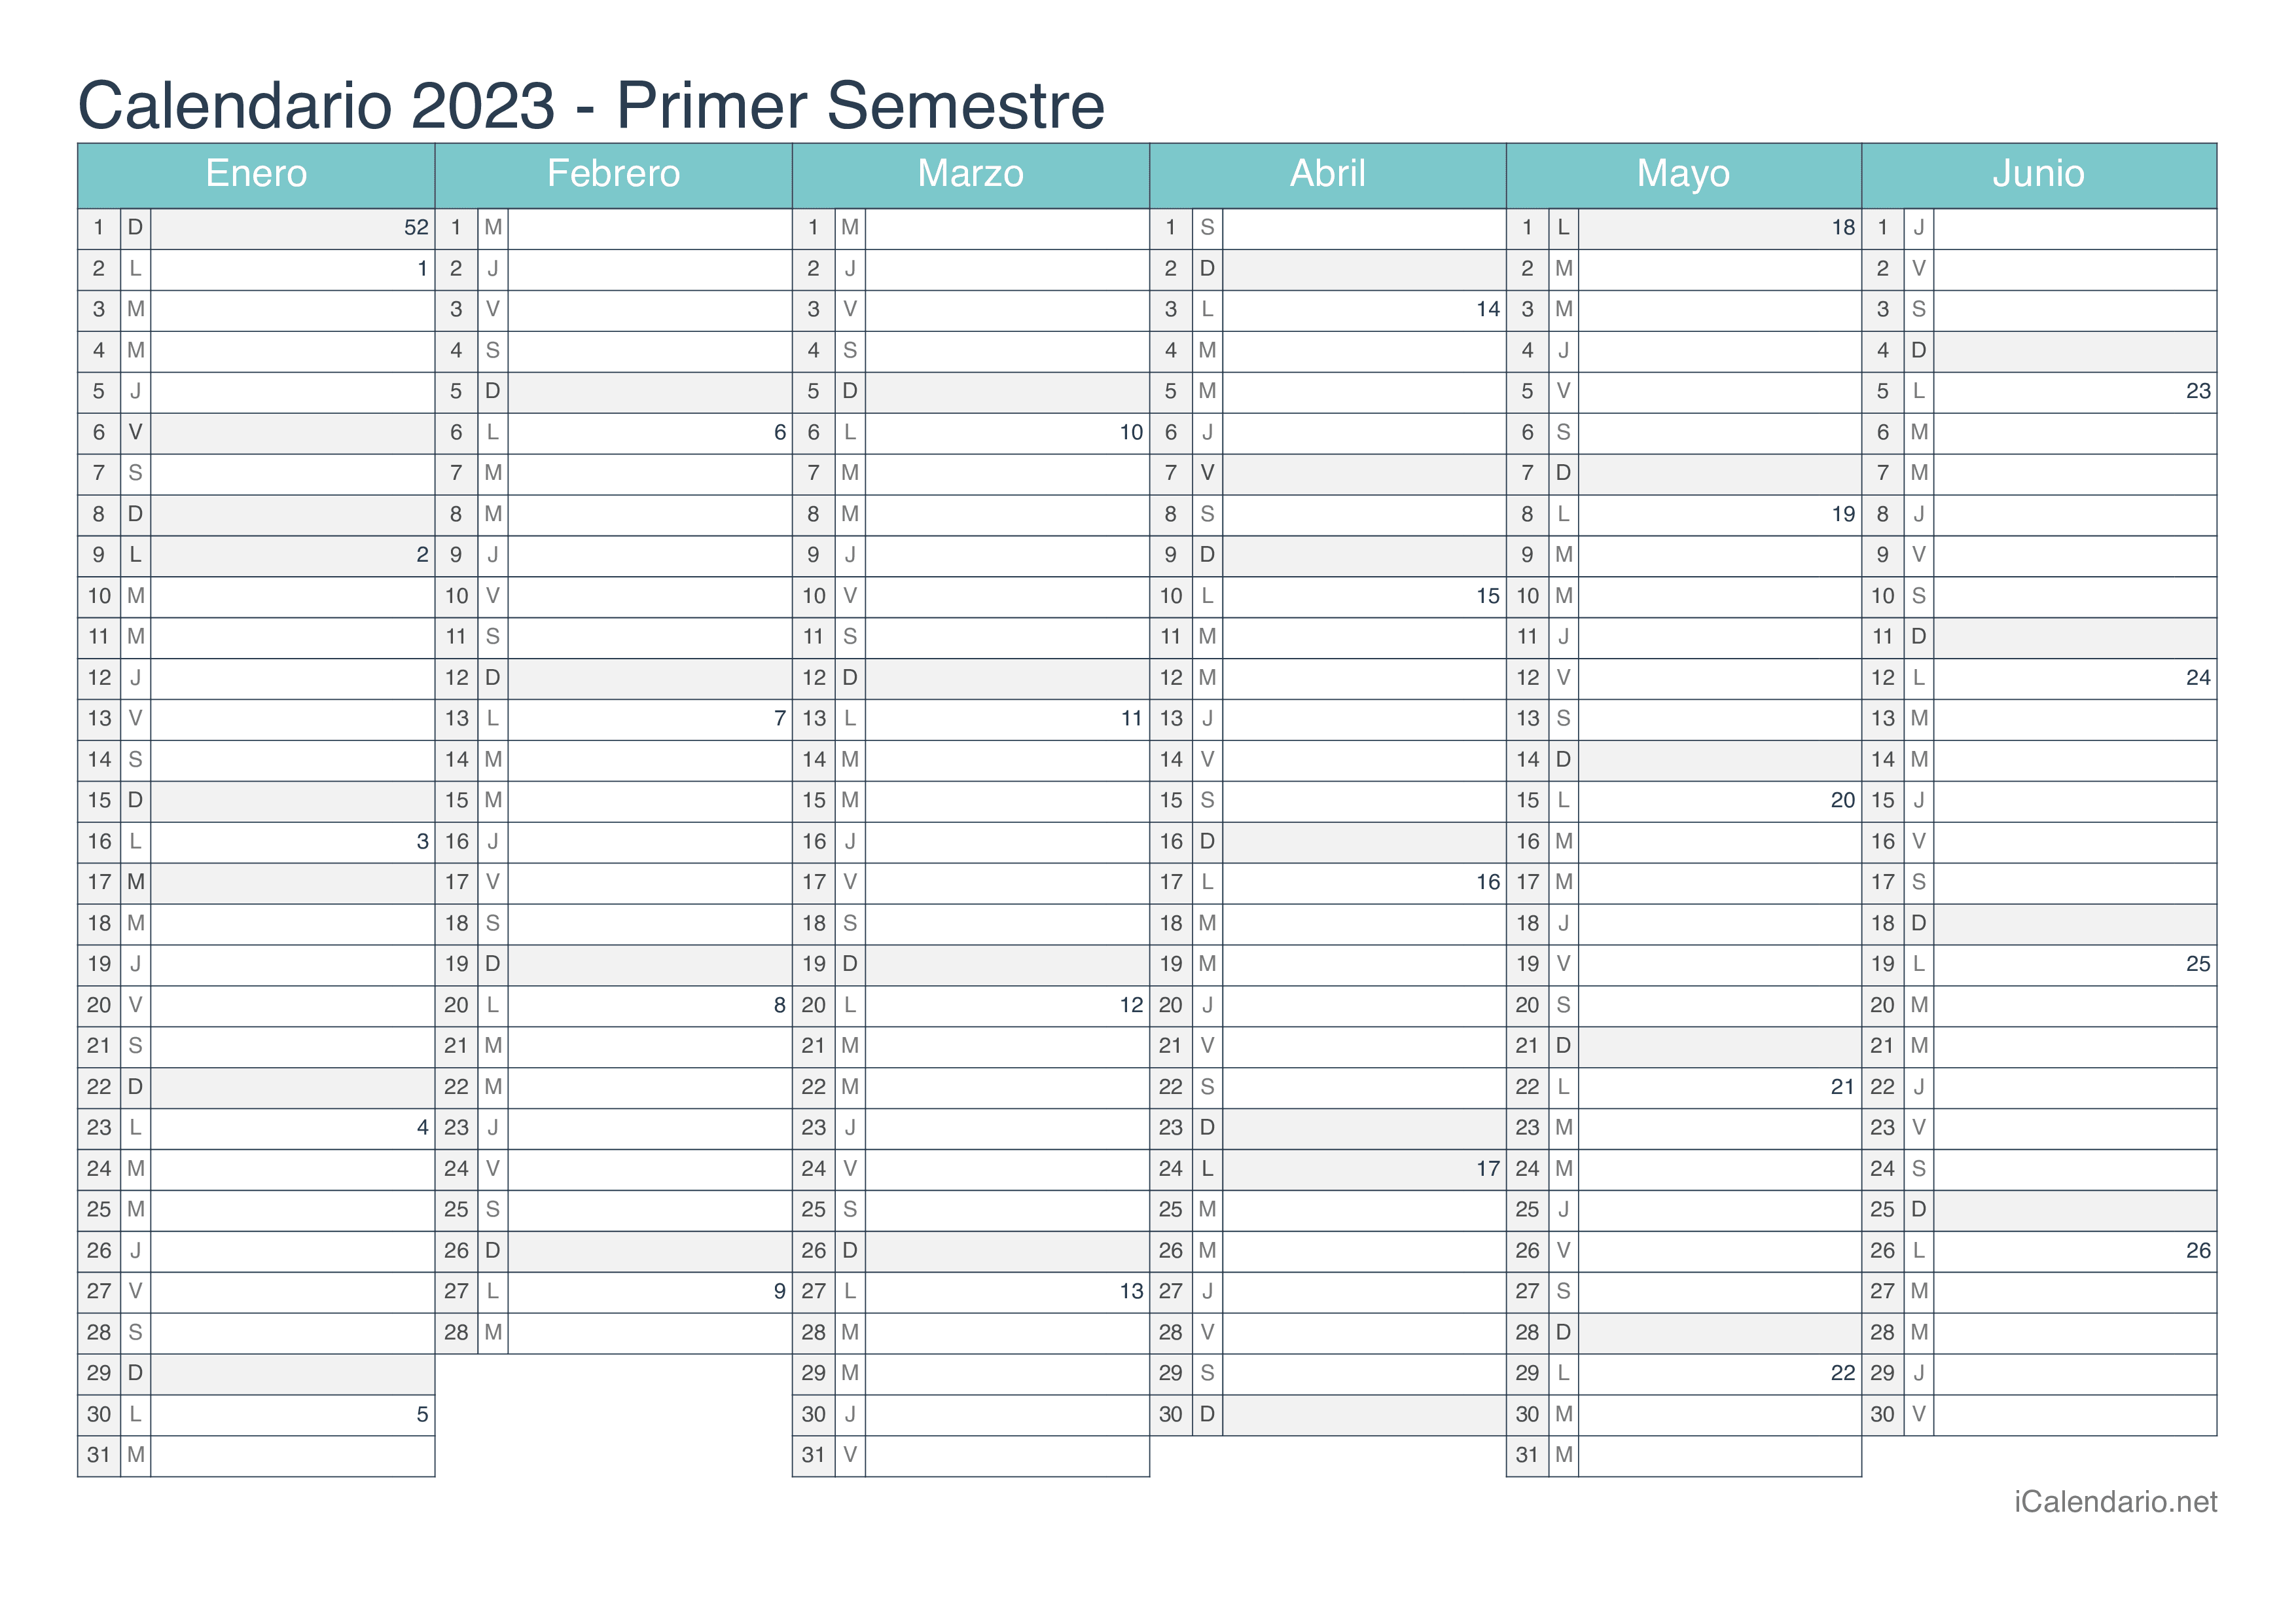 Calendario por semestre com números da semana 2023 - Turquesa